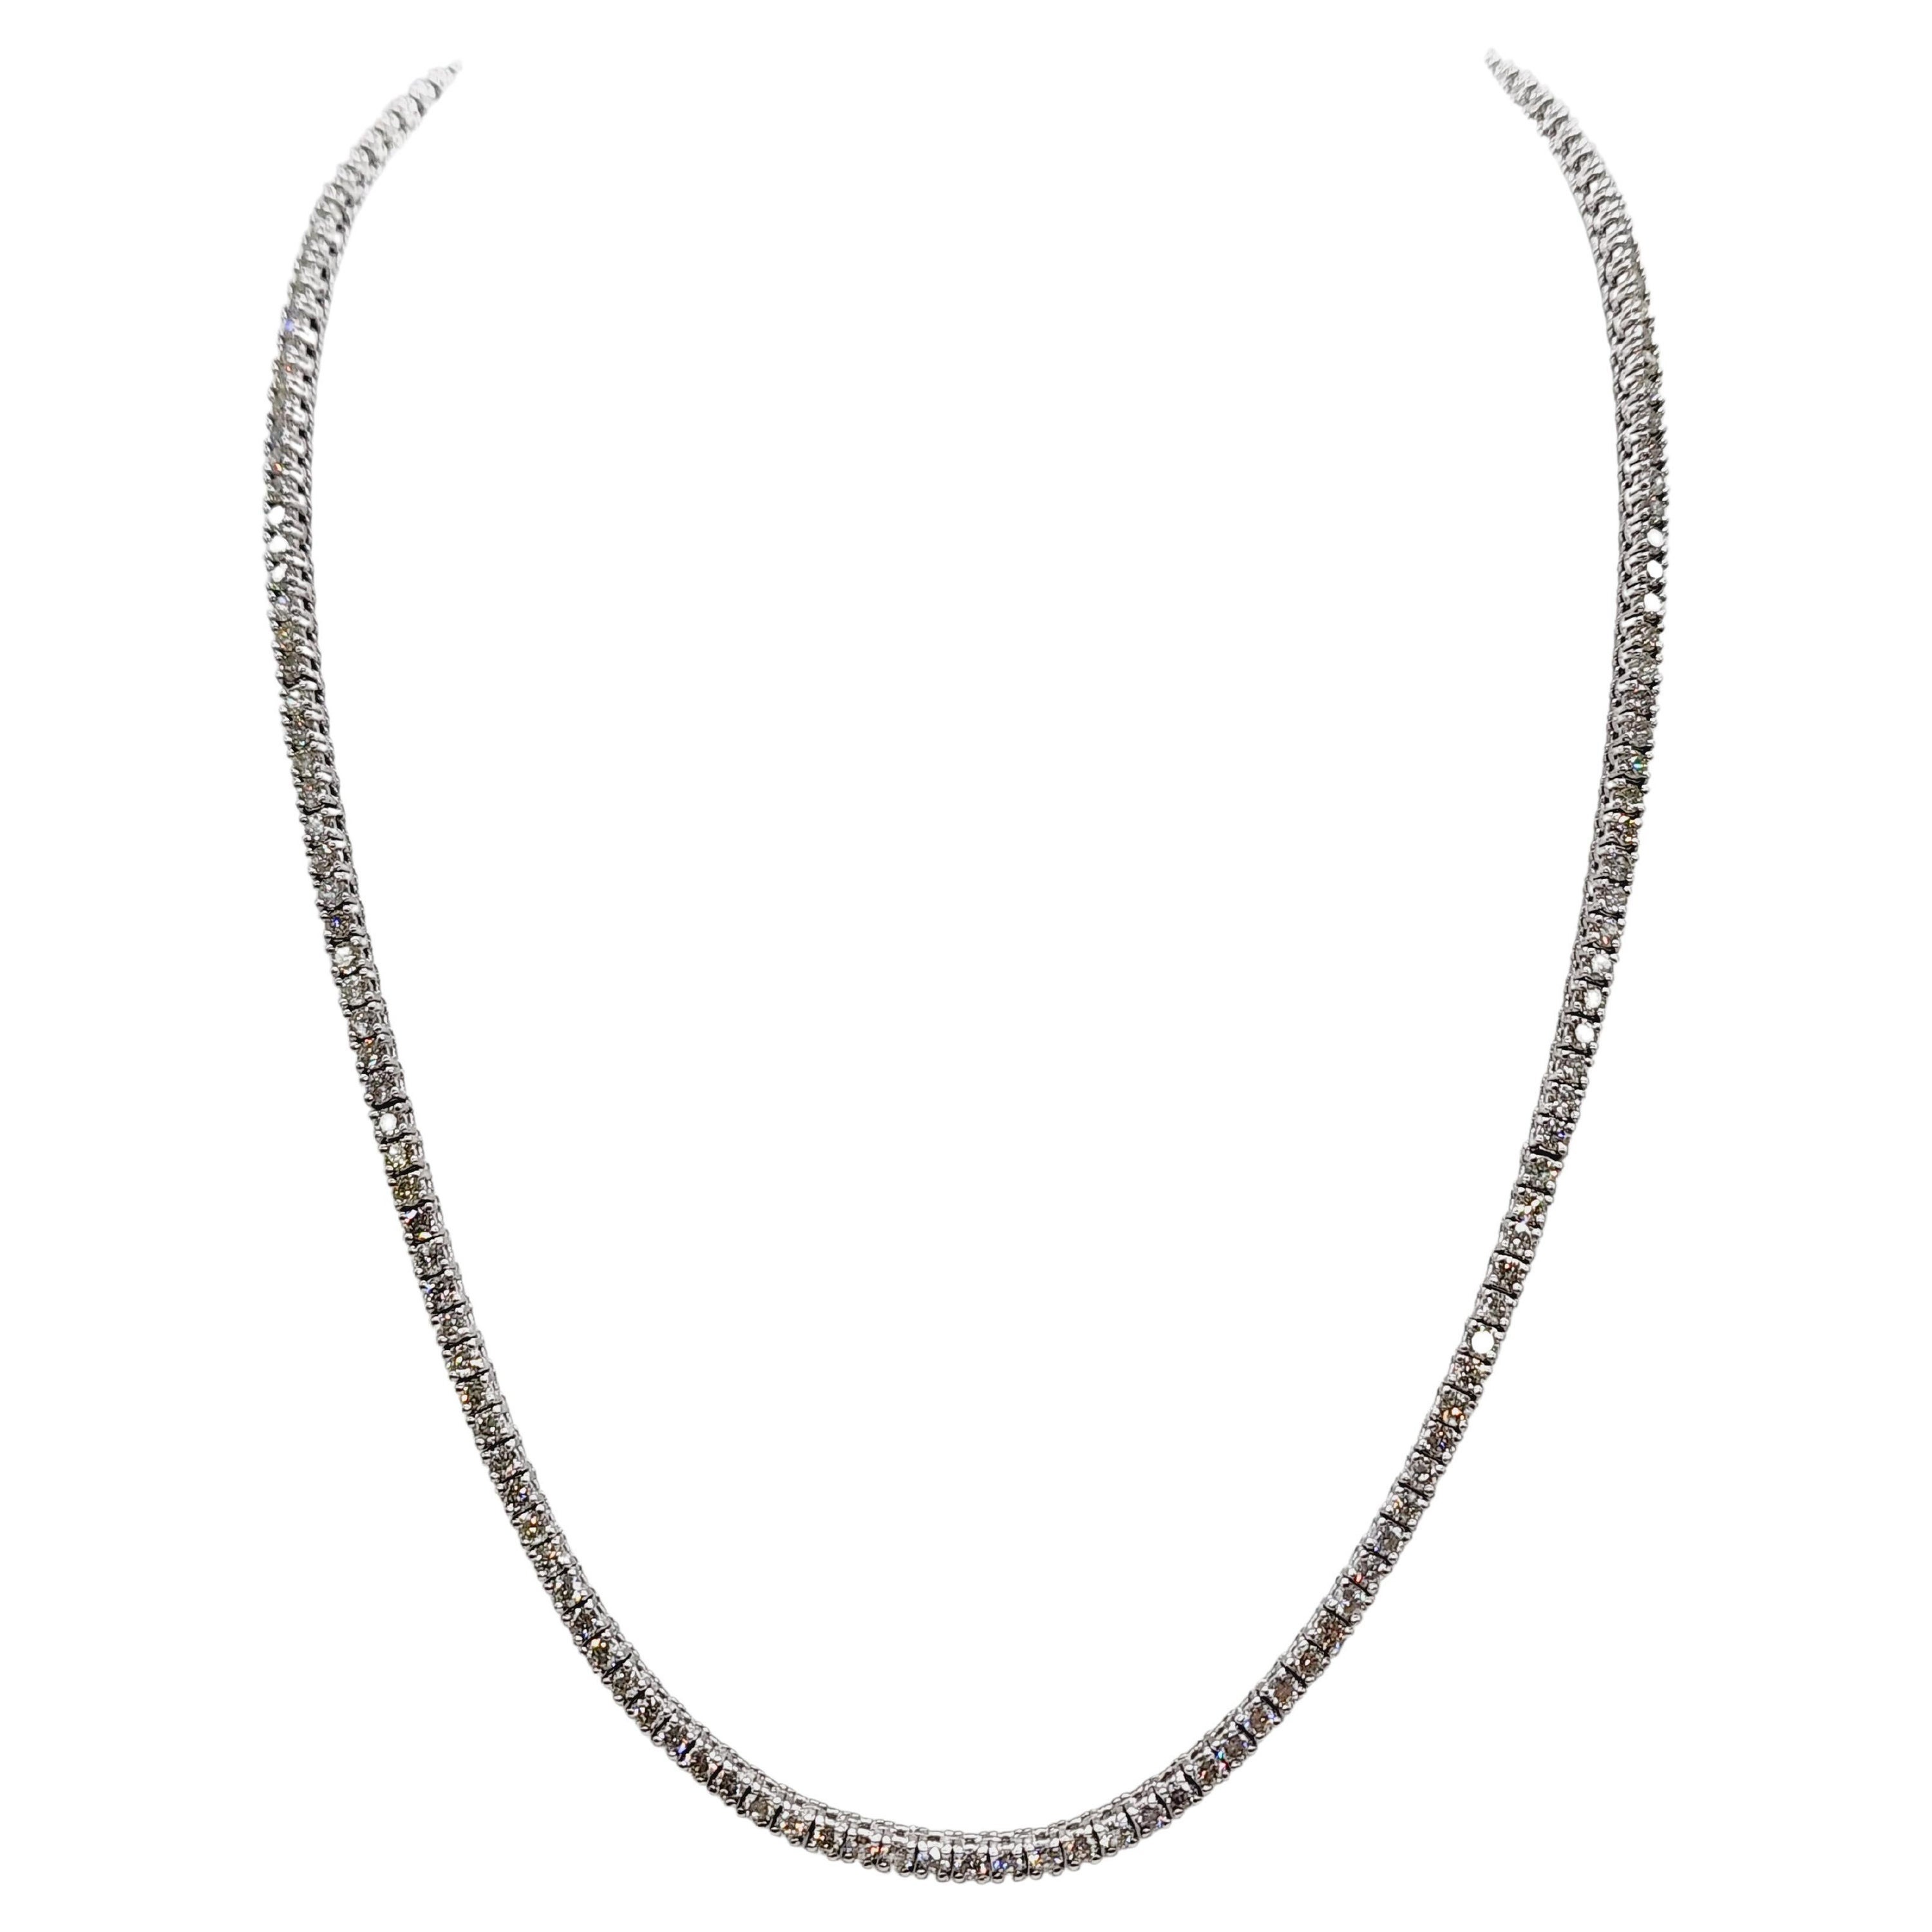 8.95 Carat Brilliant Cut Diamond Tennis Necklace 14 Karat White Gold 22" For Sale